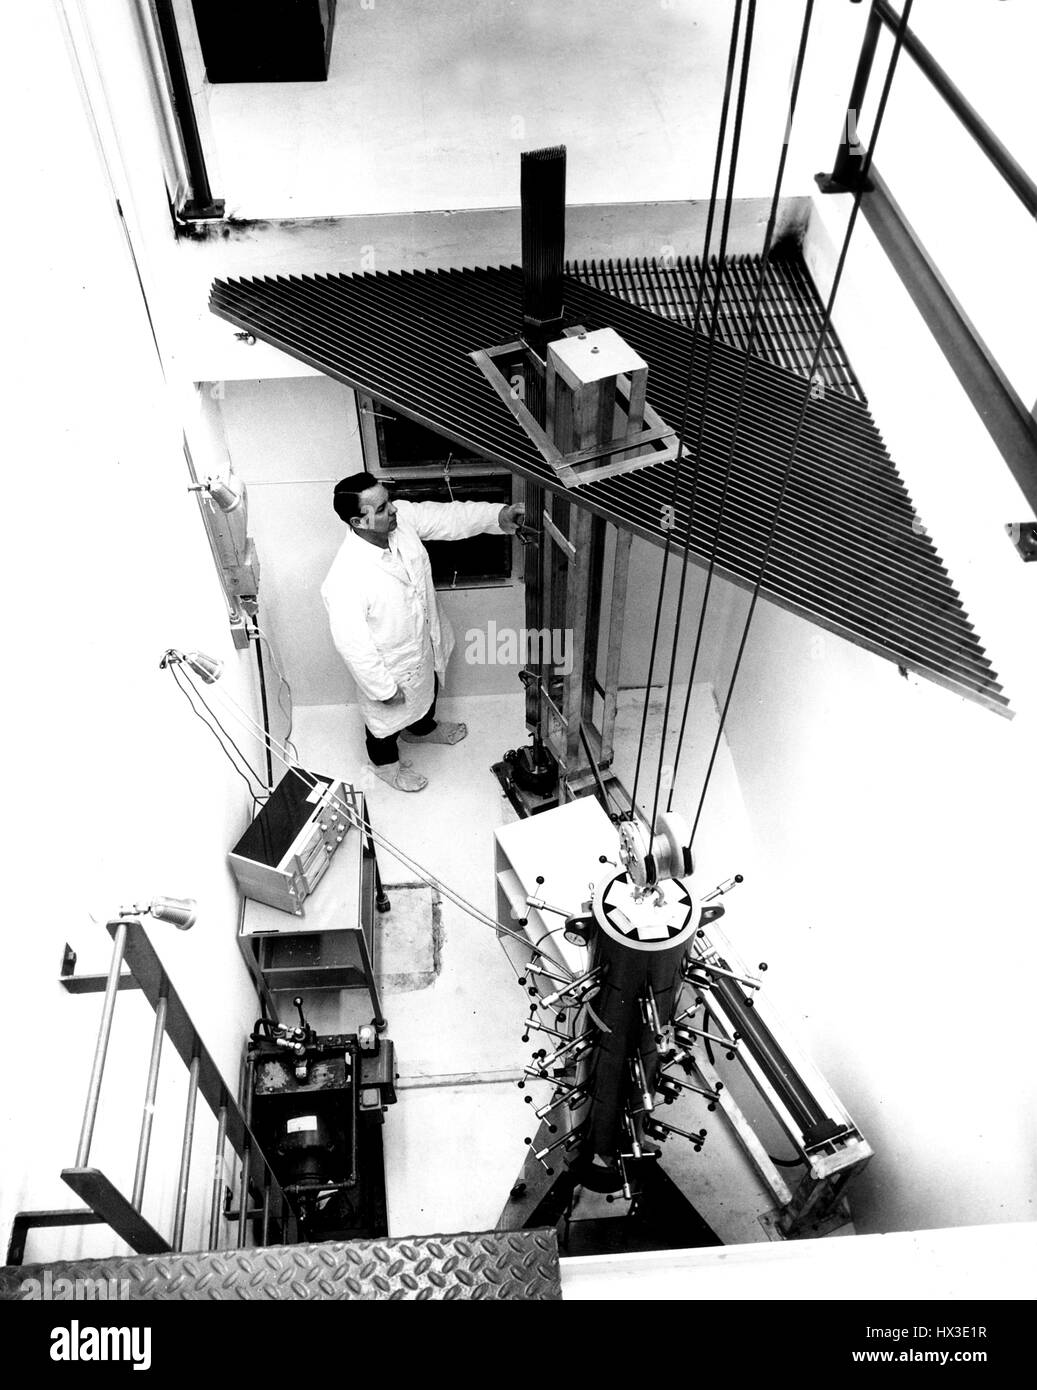 WADCO Techniker Mode Baugruppen zu einem Brennstoff Bündel, 1971. Bild mit freundlicher Genehmigung US Department of Energy. Stockfoto